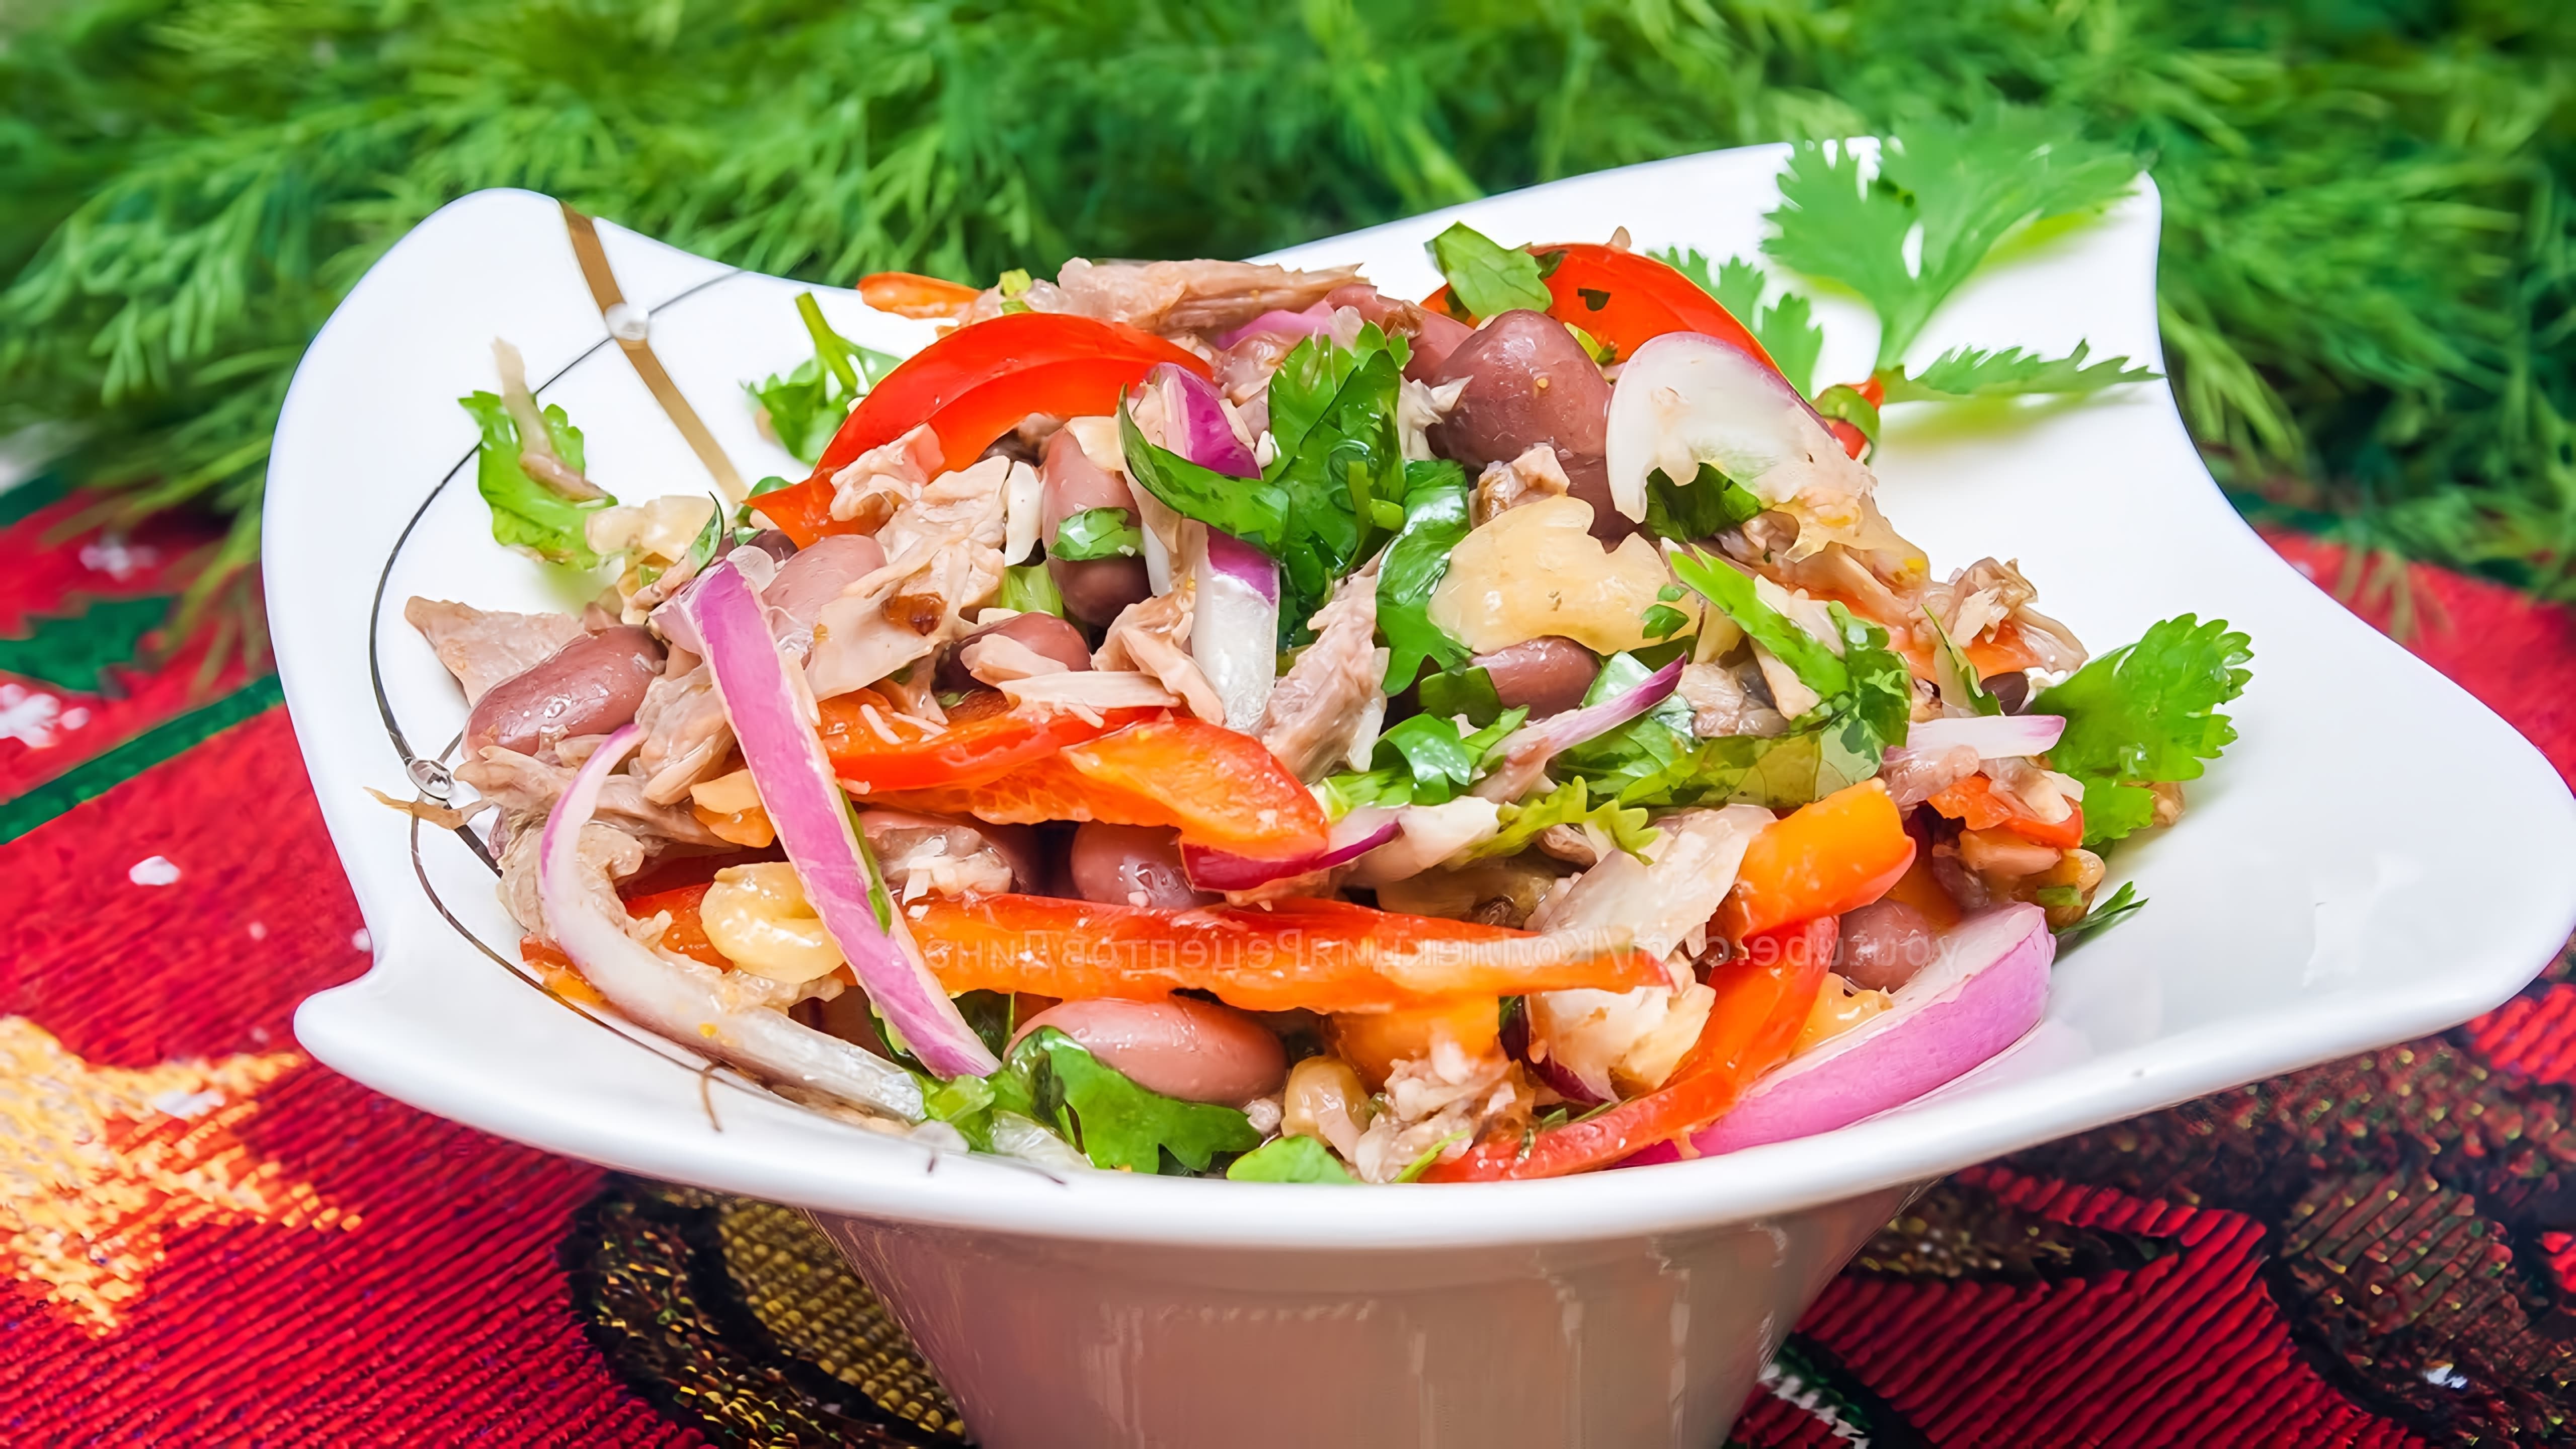 В этом видео Дина показывает, как приготовить вкусный и сытный салат "Тбилиси" на праздничный стол